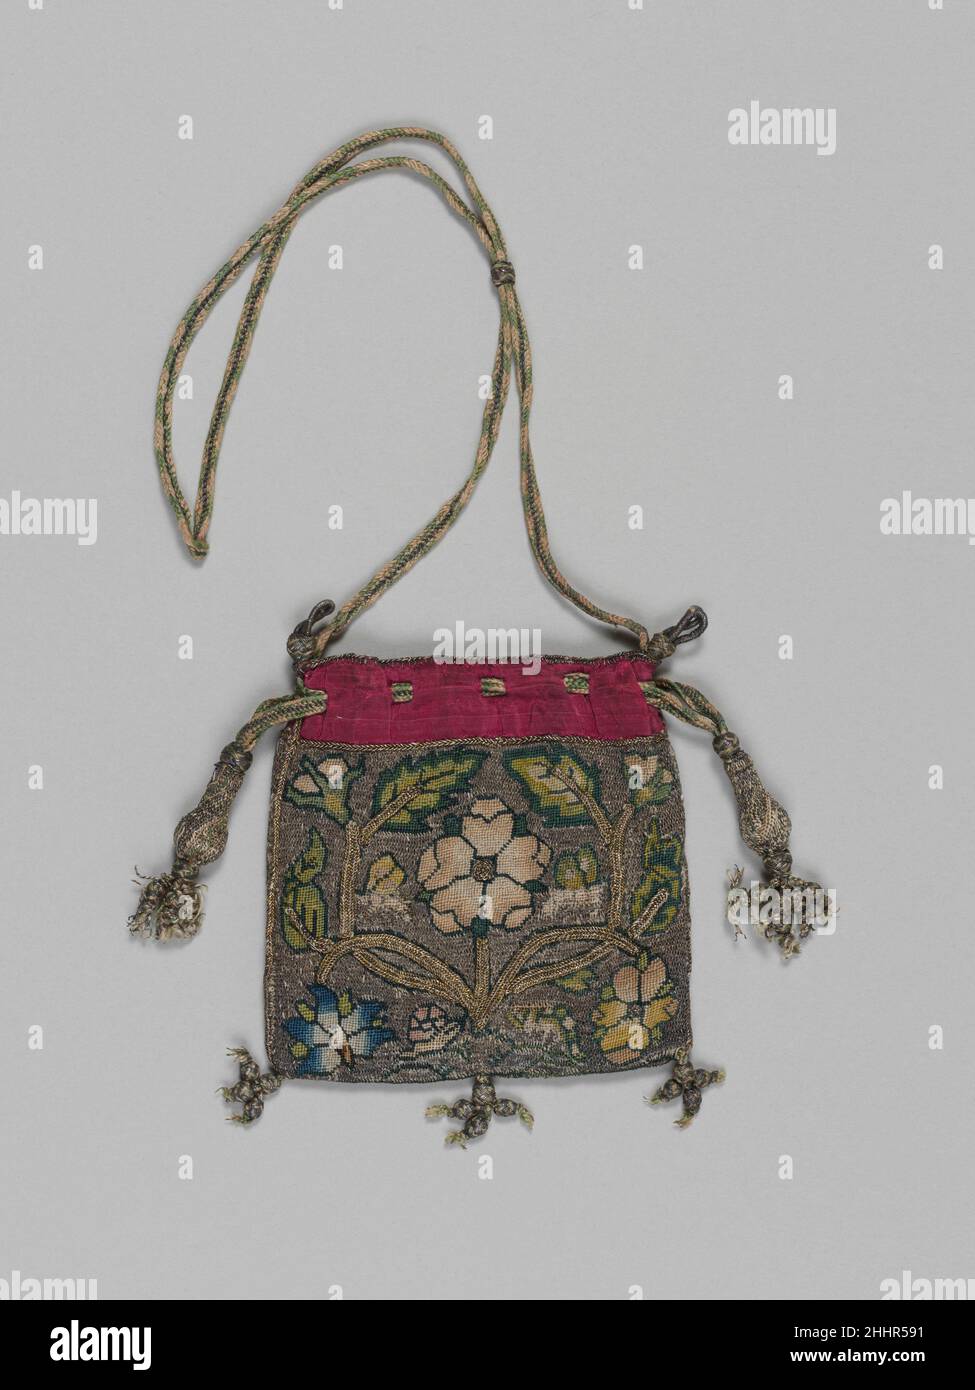 Bolsa de principios siglo 17th británico Esta cartera cuidadosamente bordada probablemente corresponde a 'bolsas de tejidos' registradas en un número de inventarios de los siglos y XVII. Estas carteras